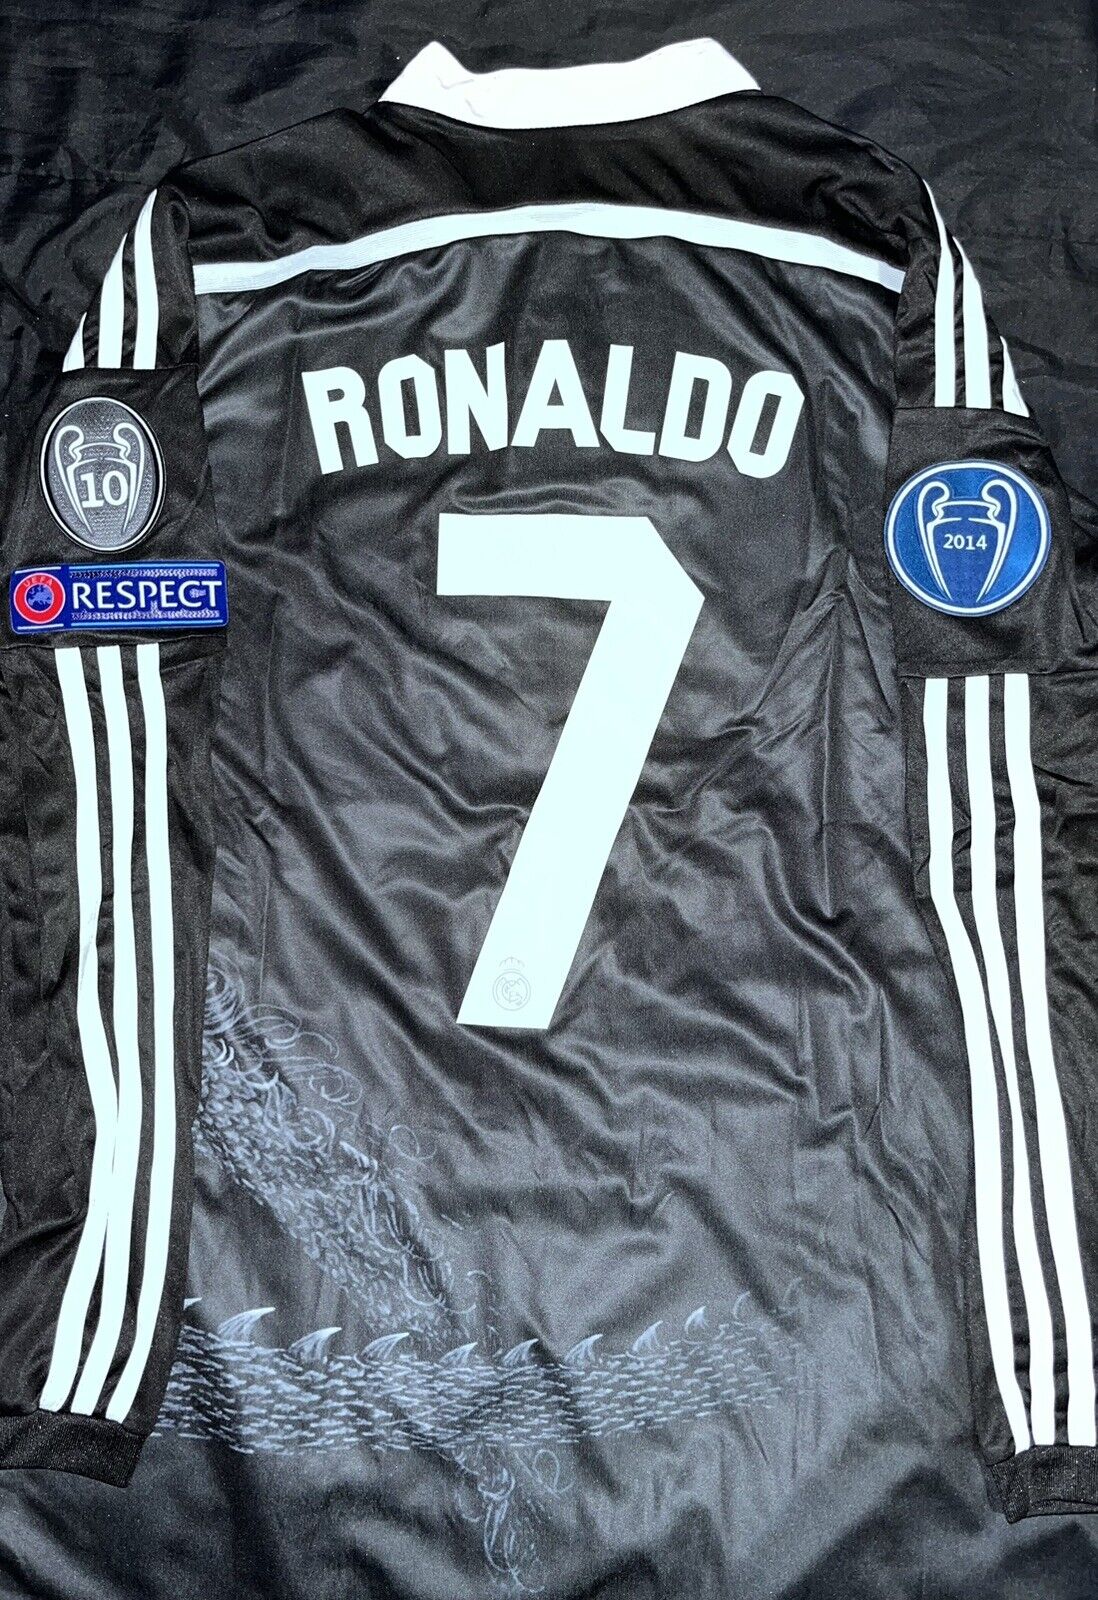 Real Madrid Ronaldo #7UCL 2014 Yohji Yamamoto Black Dragon Jersey